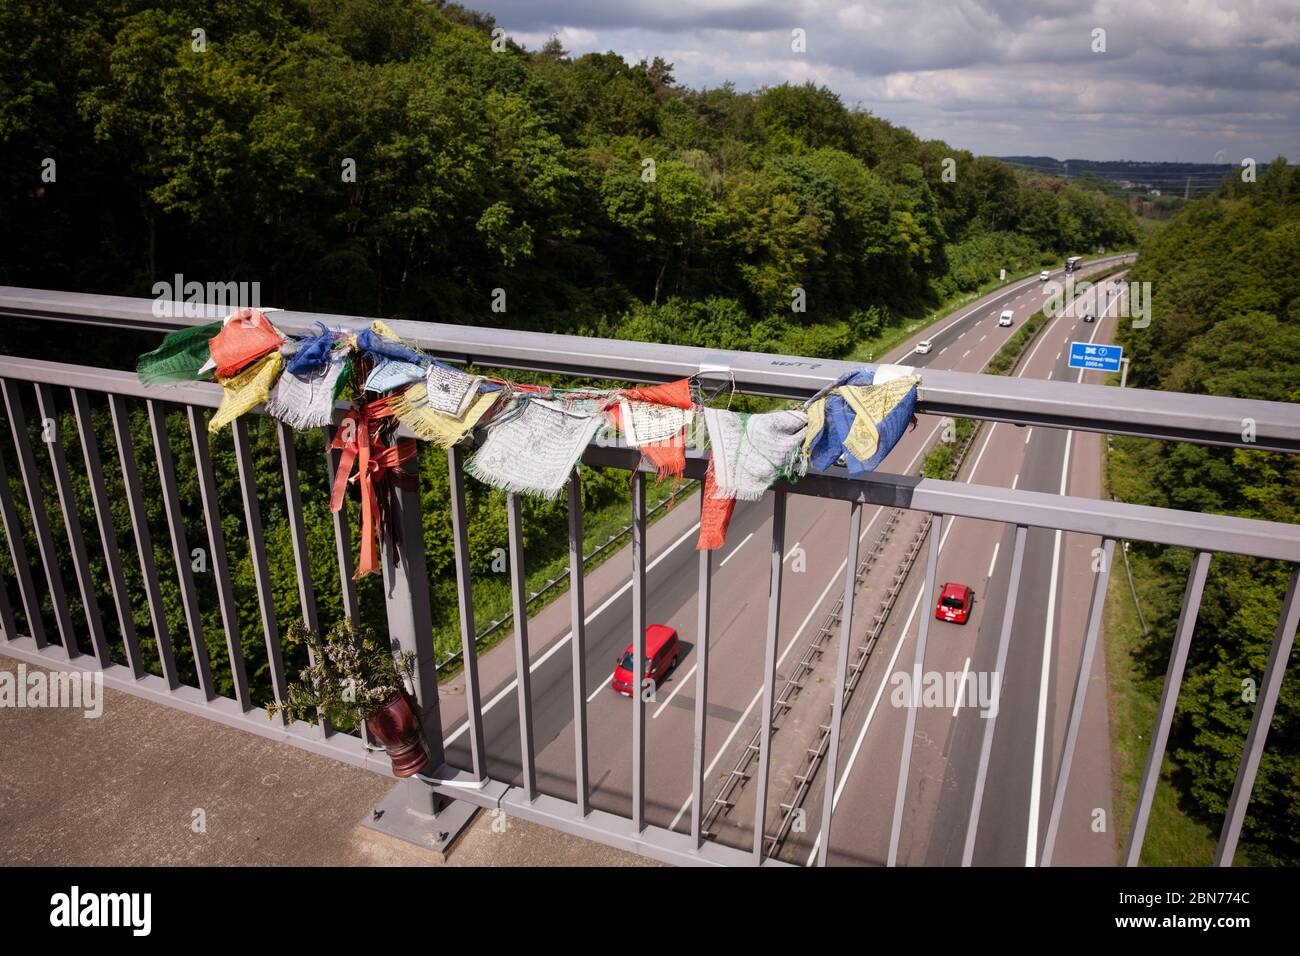 Banderas budistas en memoria de un hombre que se suicidó saltando desde este puente sobre la autopista A45 al sur de Dortmund, Renania del Norte-Westfalia, G. Foto de stock